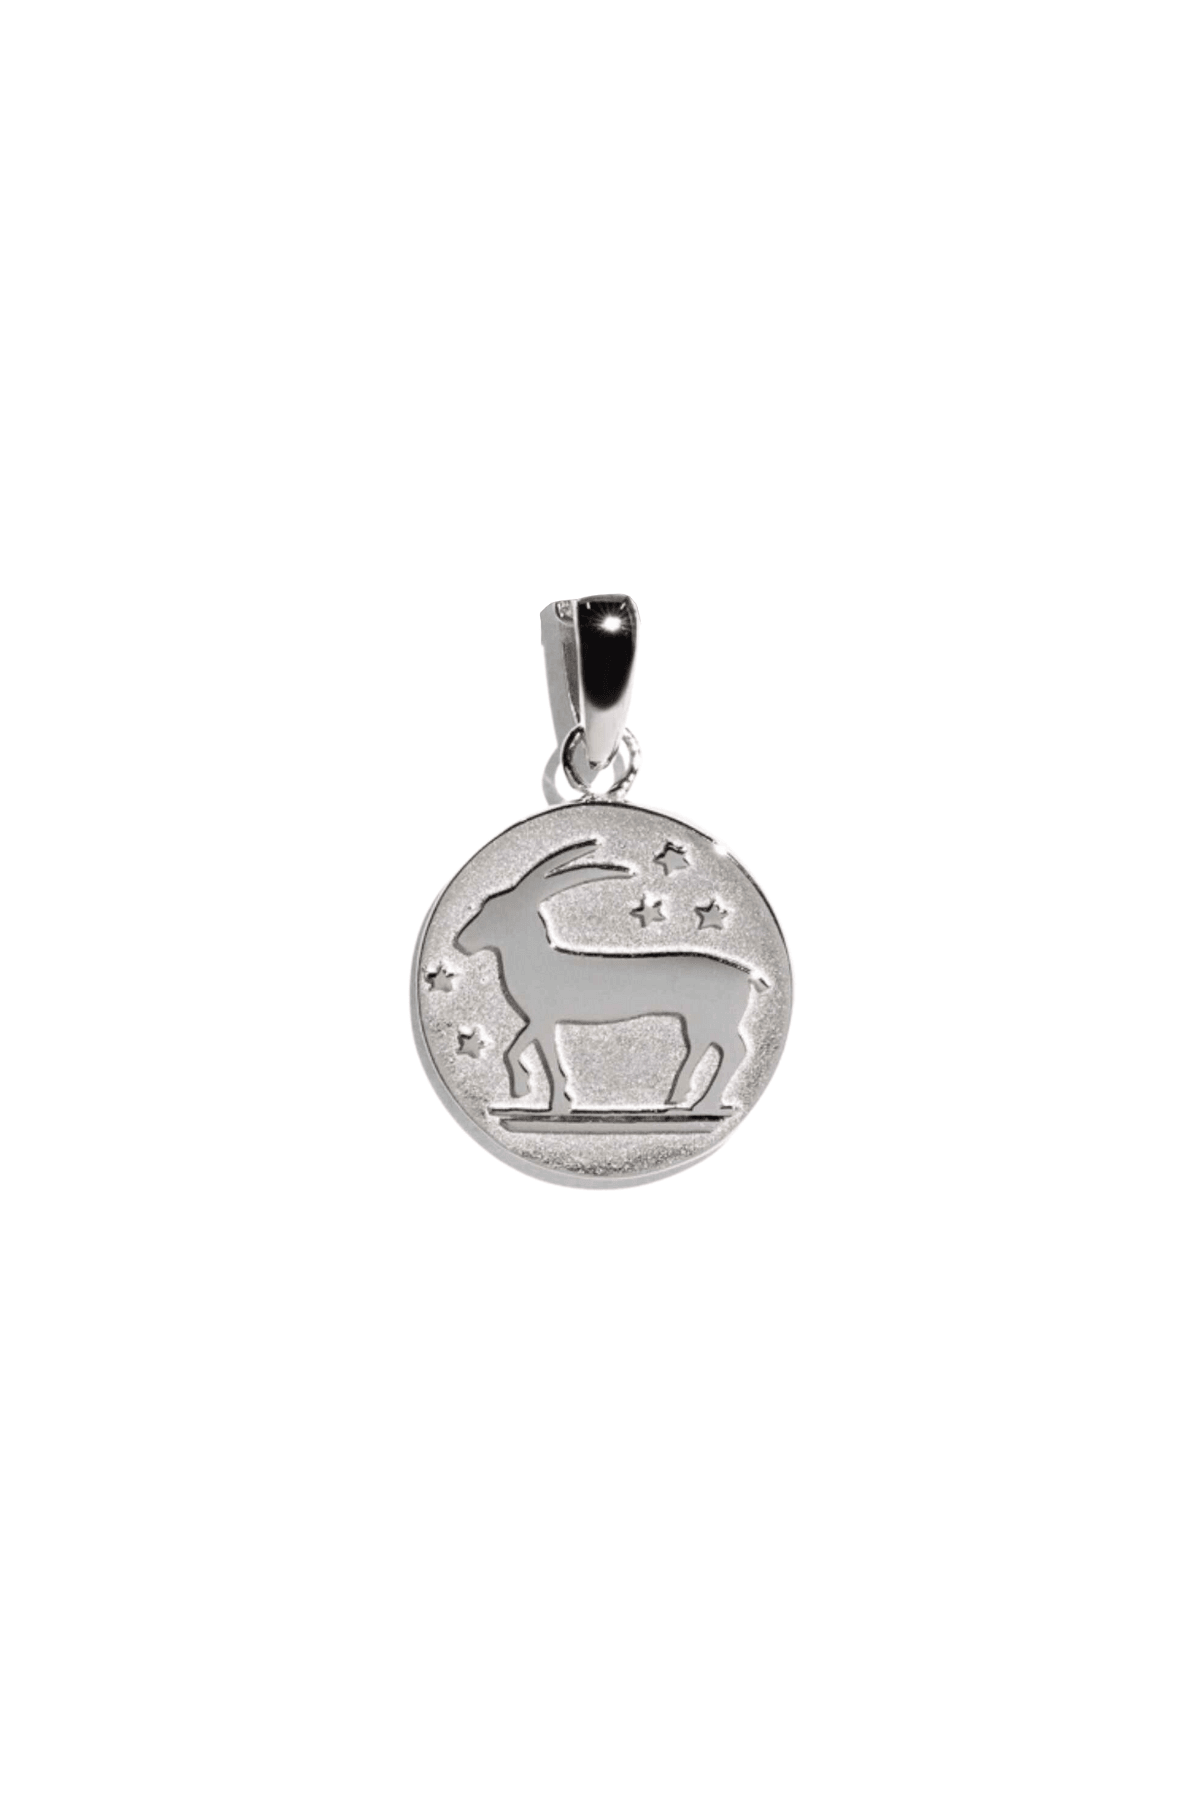 The Silver Capricorn Zodiac Pendant